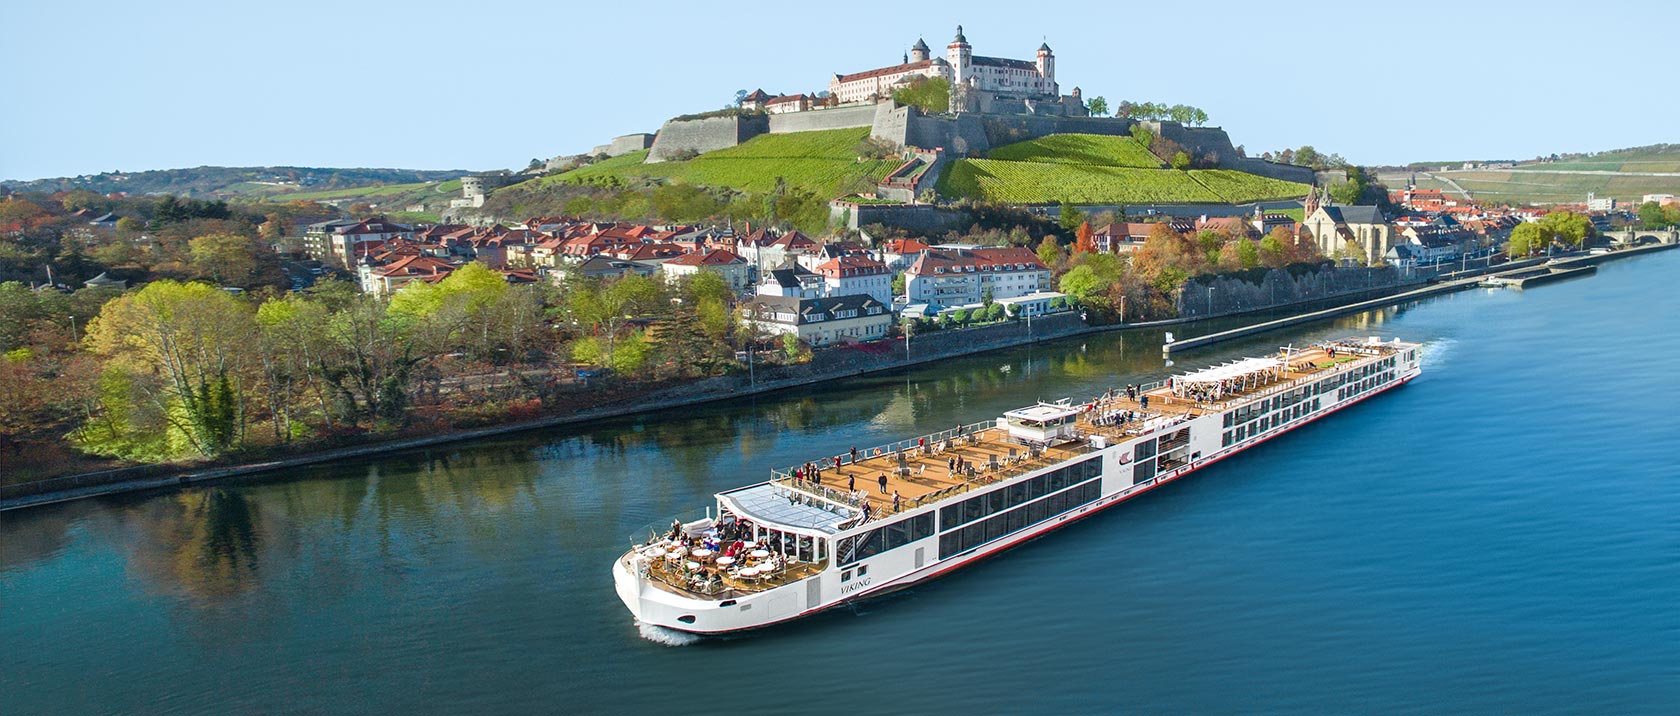 About Viking Einar Viking River Cruises